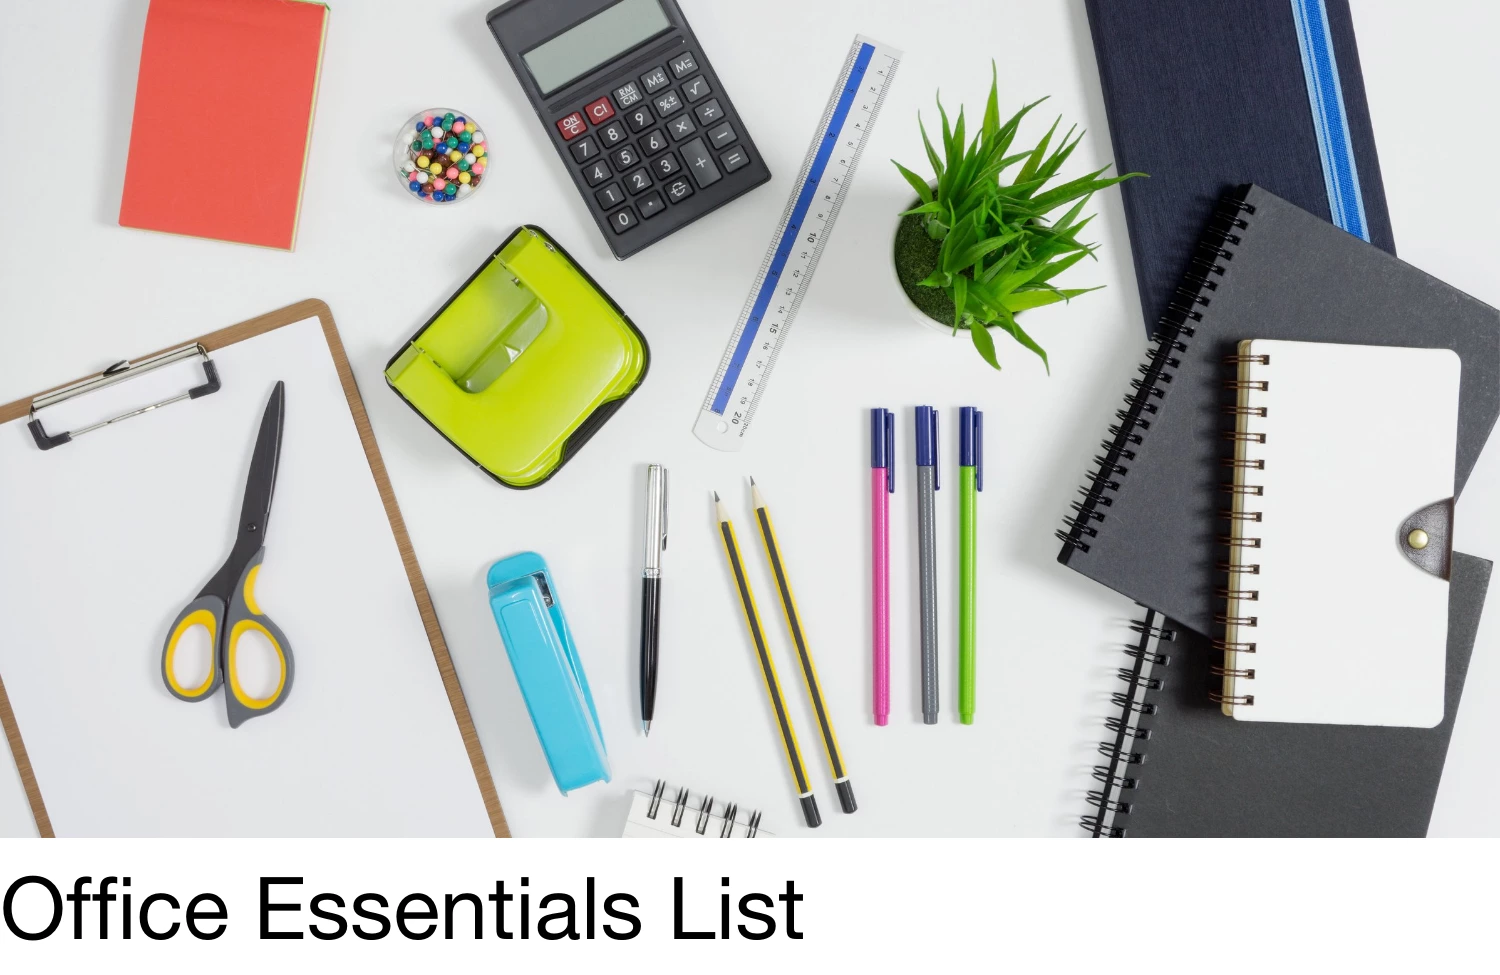 Office Essentials List